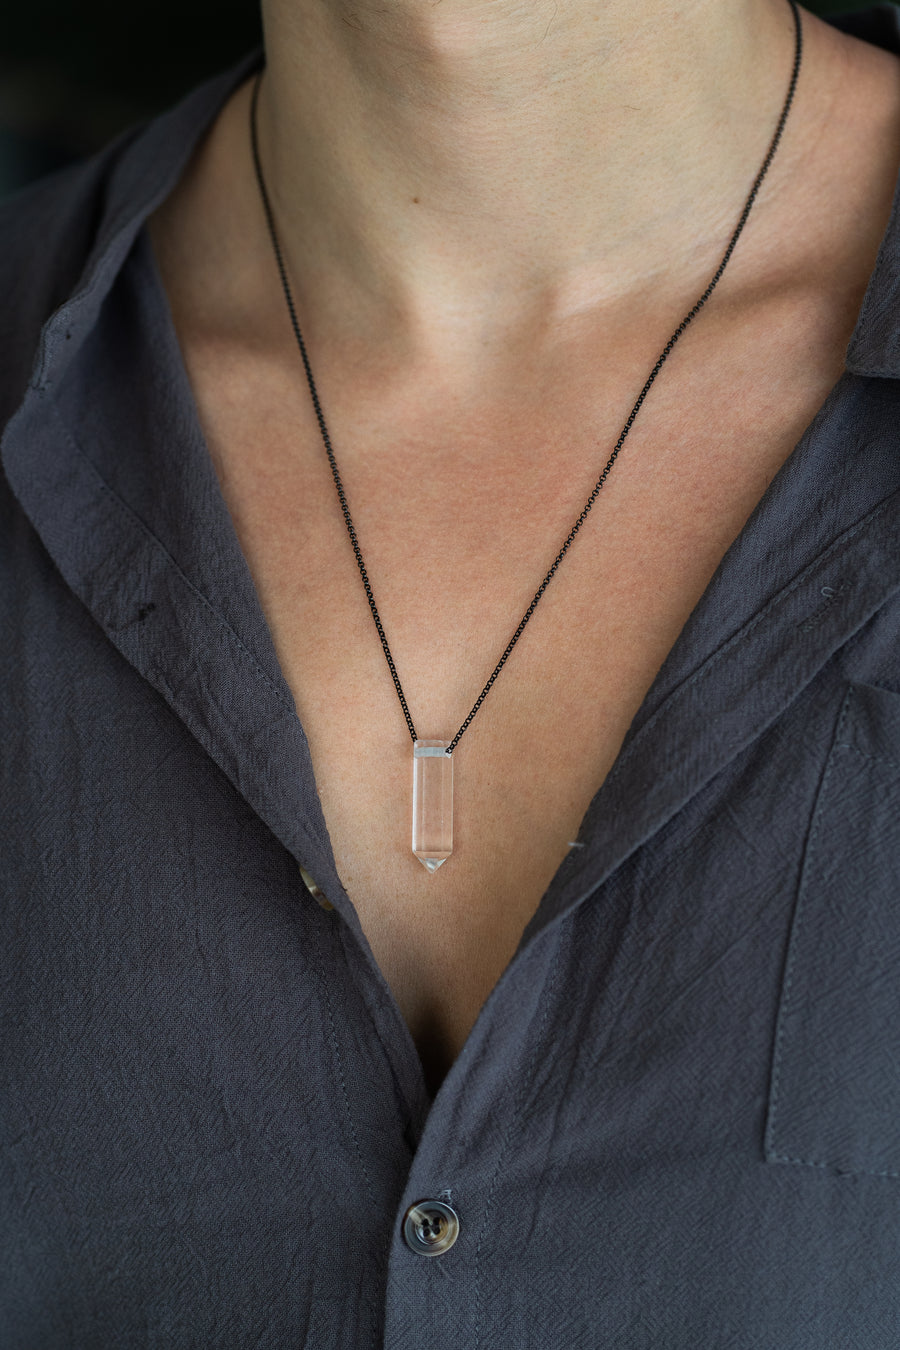 Clear quartz point shaped necklace